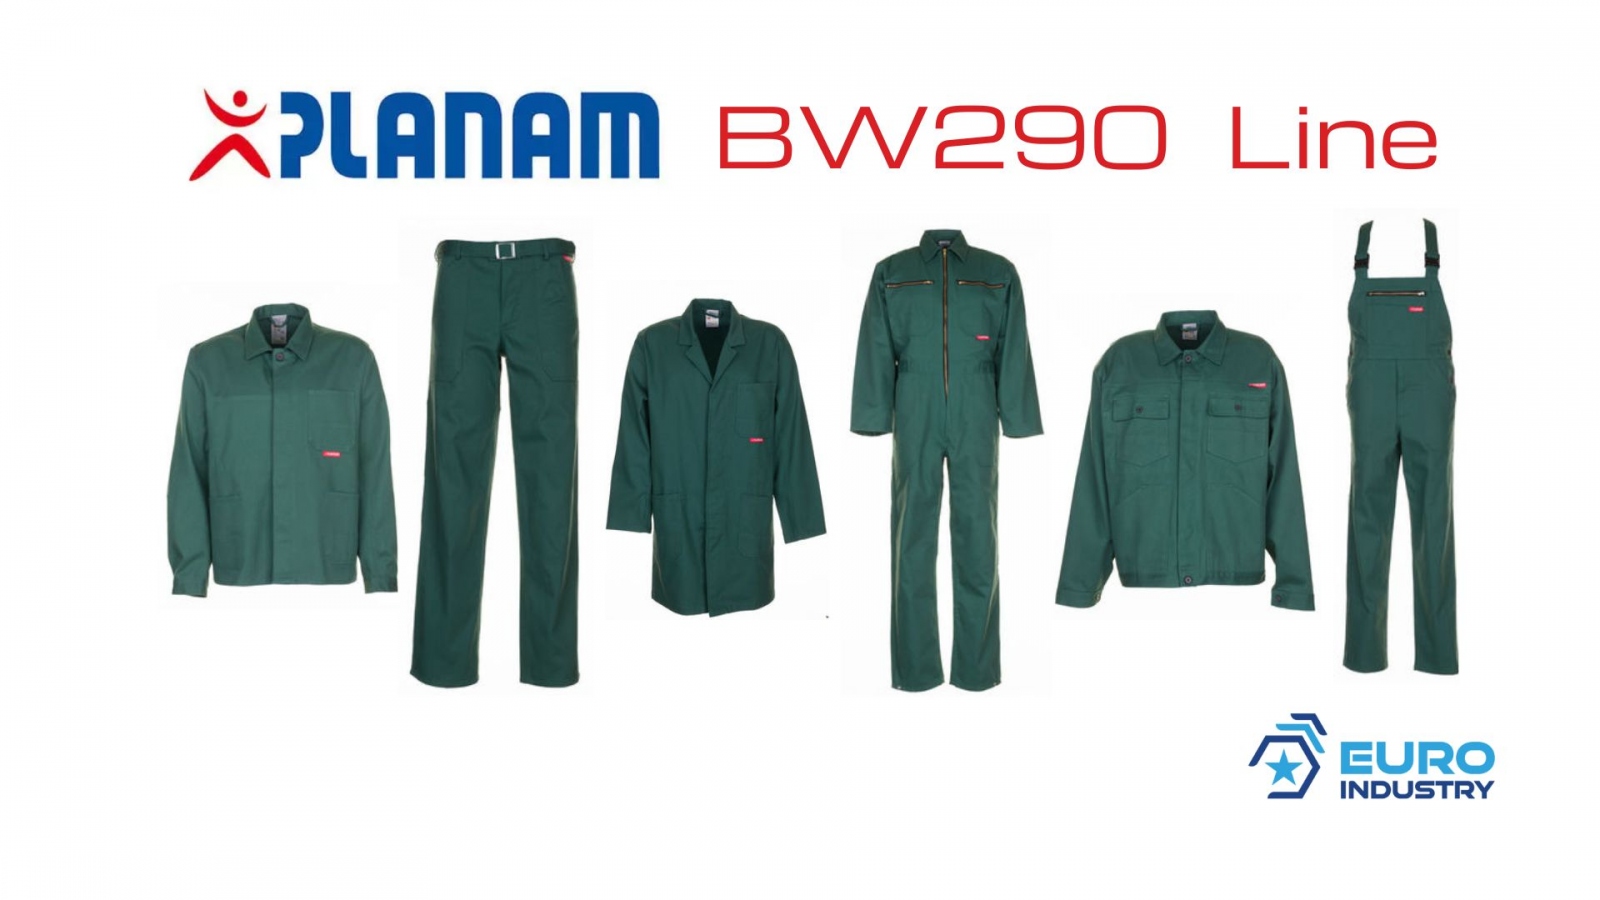 pics/Planam/planam-bw-290-linie-mittelgruen-baumwolle-details.jpg